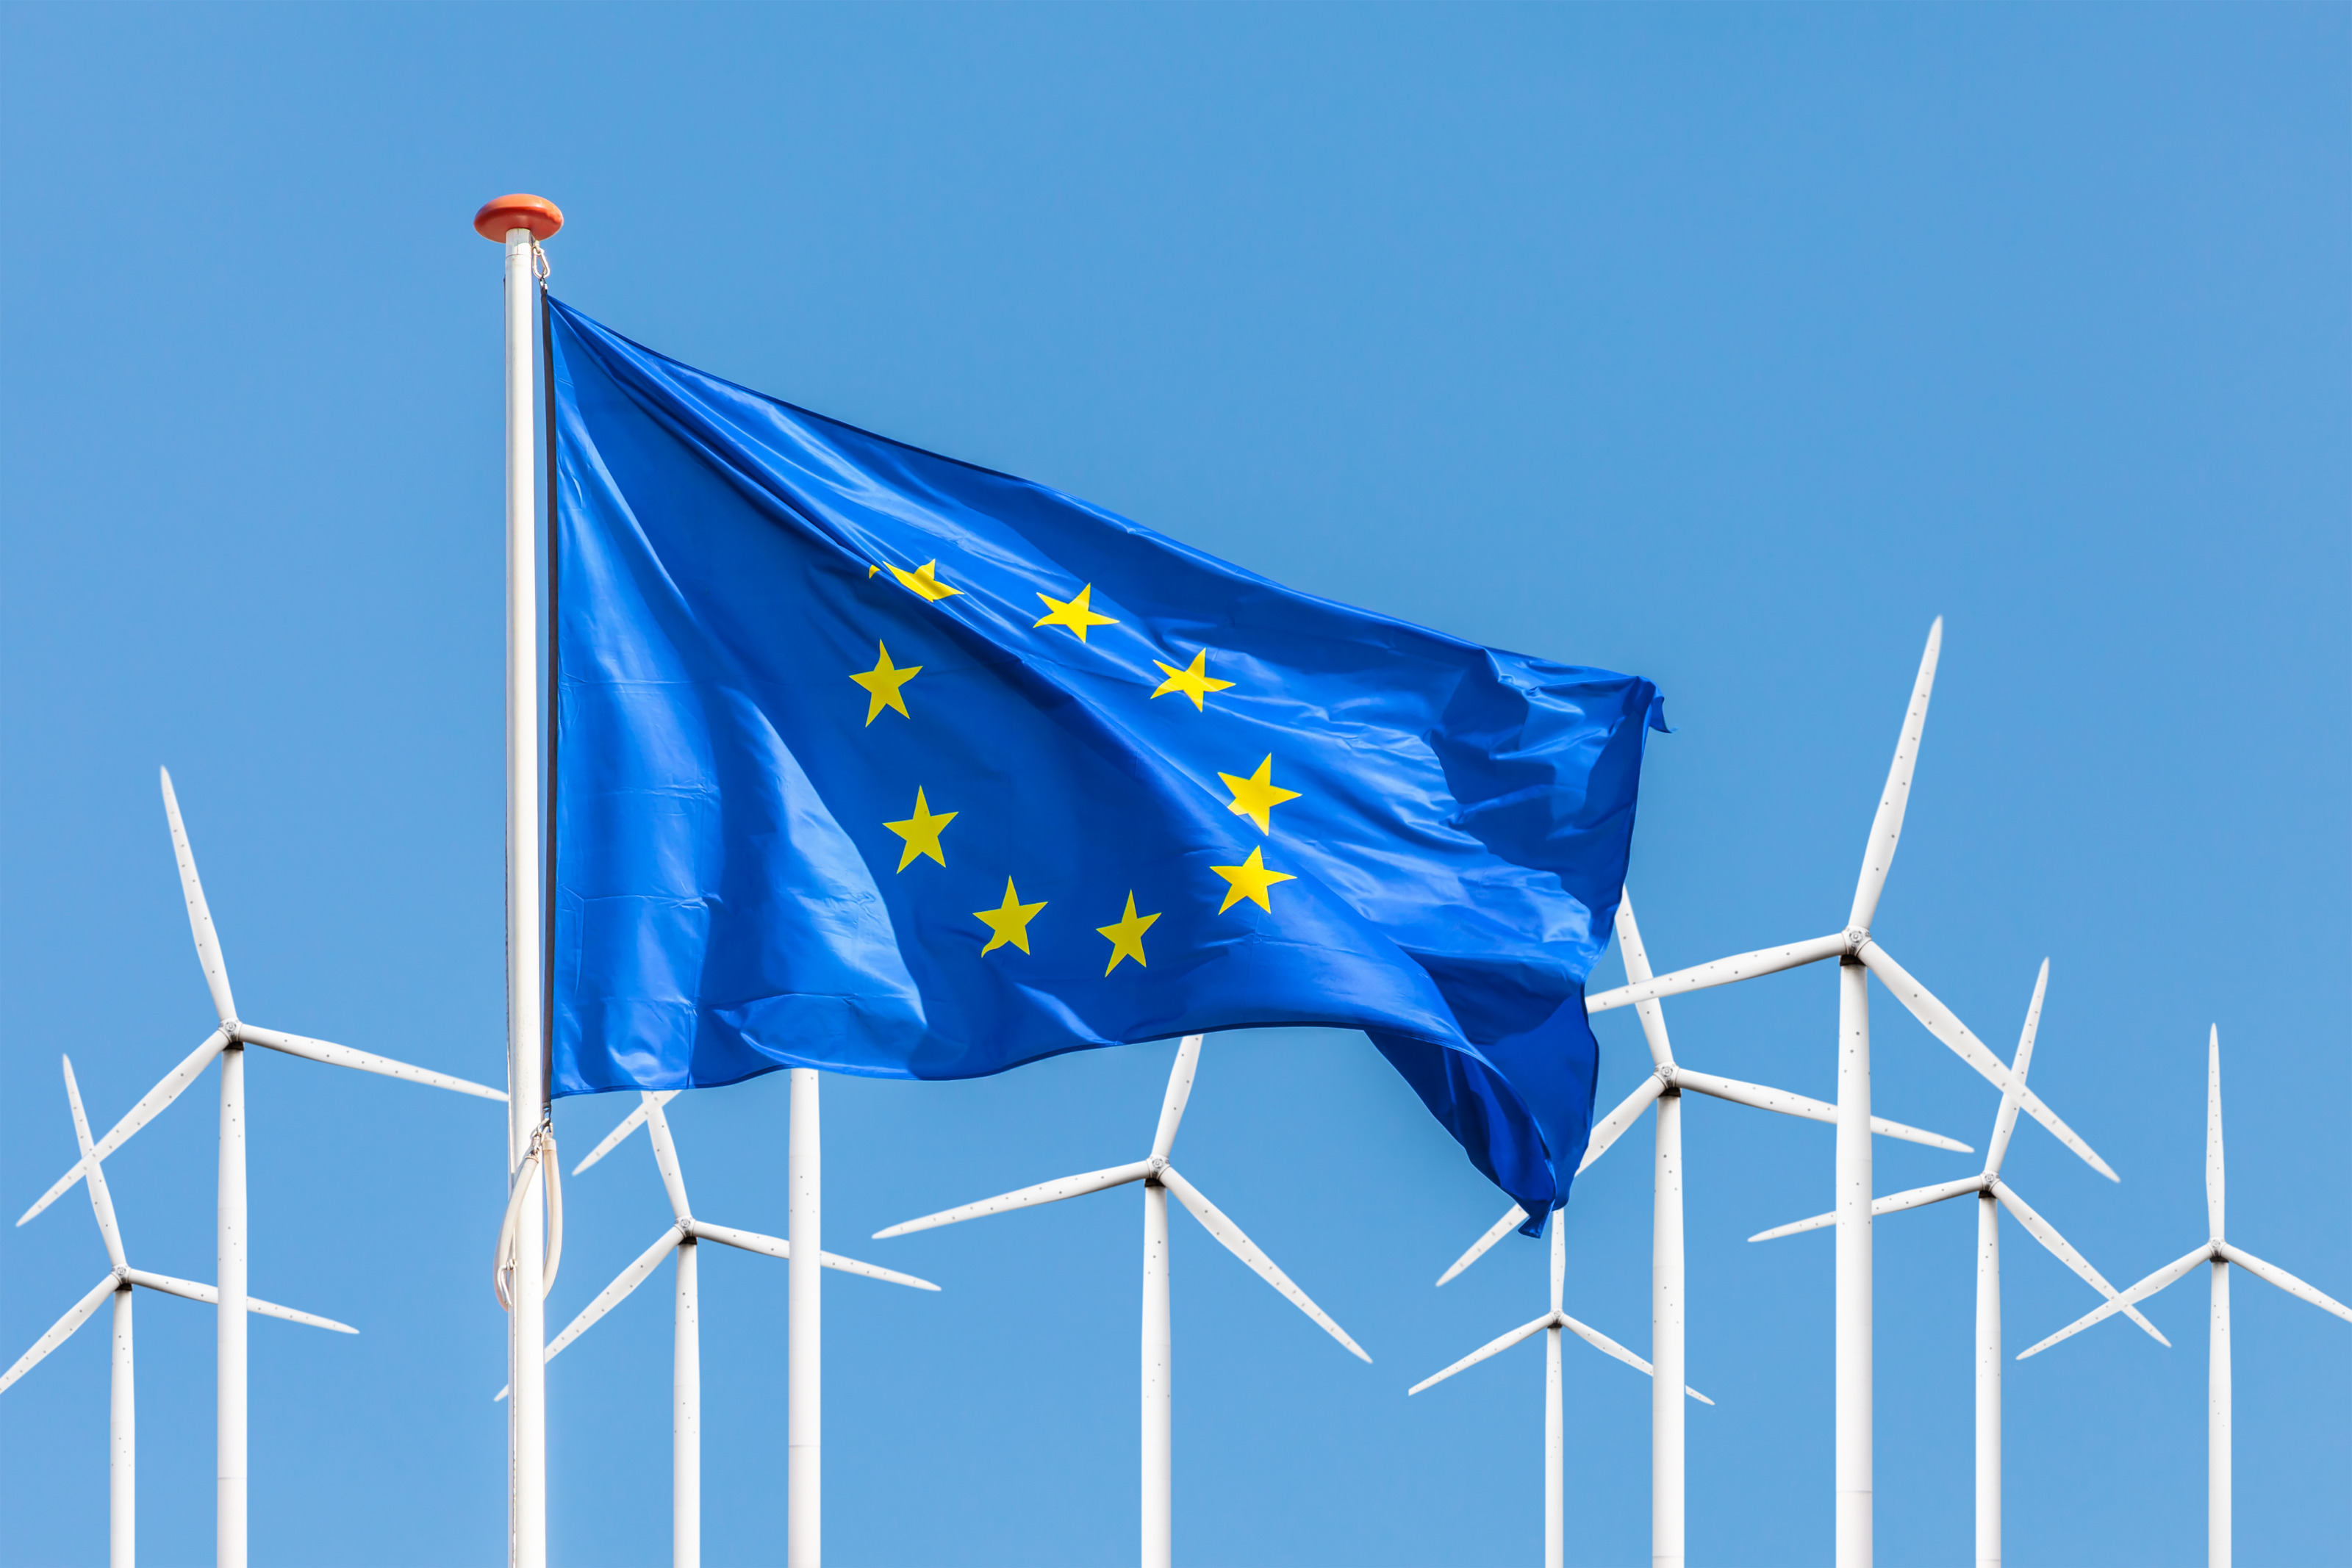 EU-Flagge im Wind wehend, im Hintergrund Windräder unter blauem Himmel